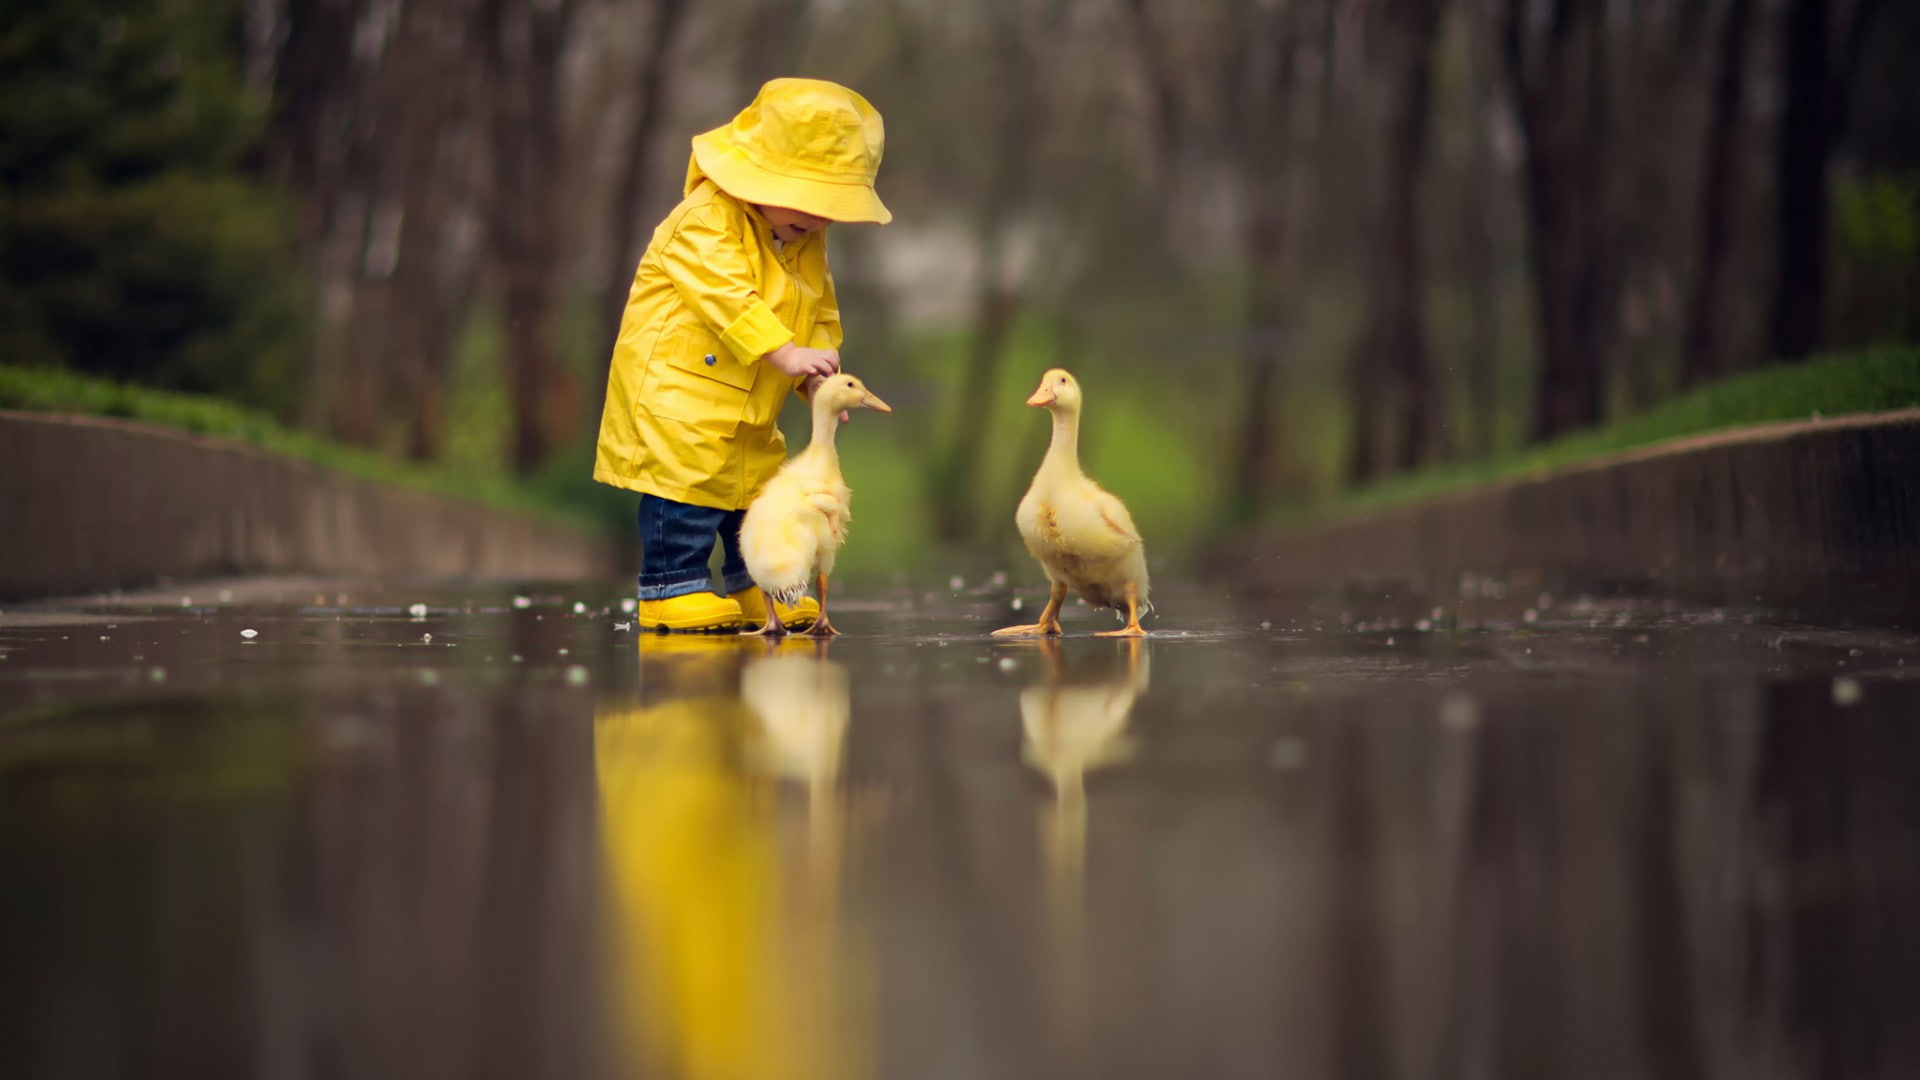 Small child with ducks, water, childhood, bird, vertebrate, yellow